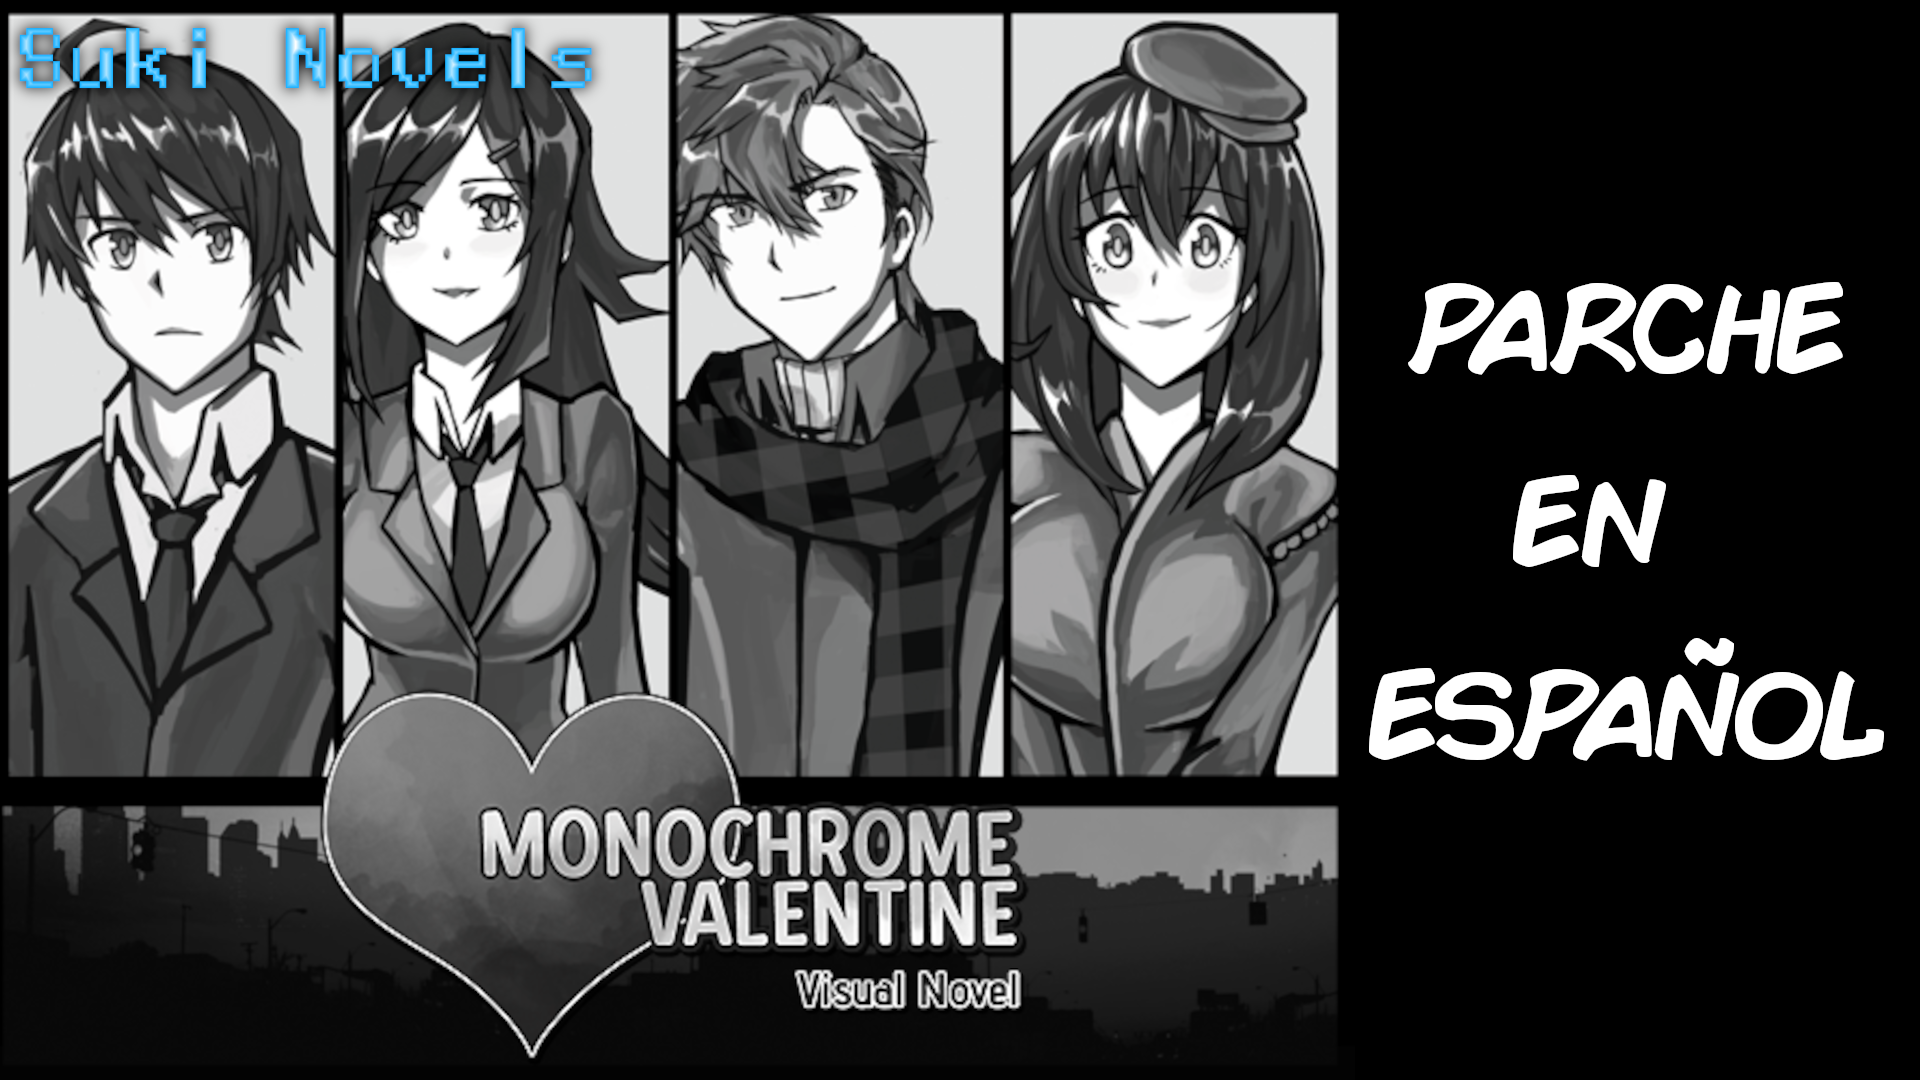 Monochrome Valentine (Parche Español) V 1.1